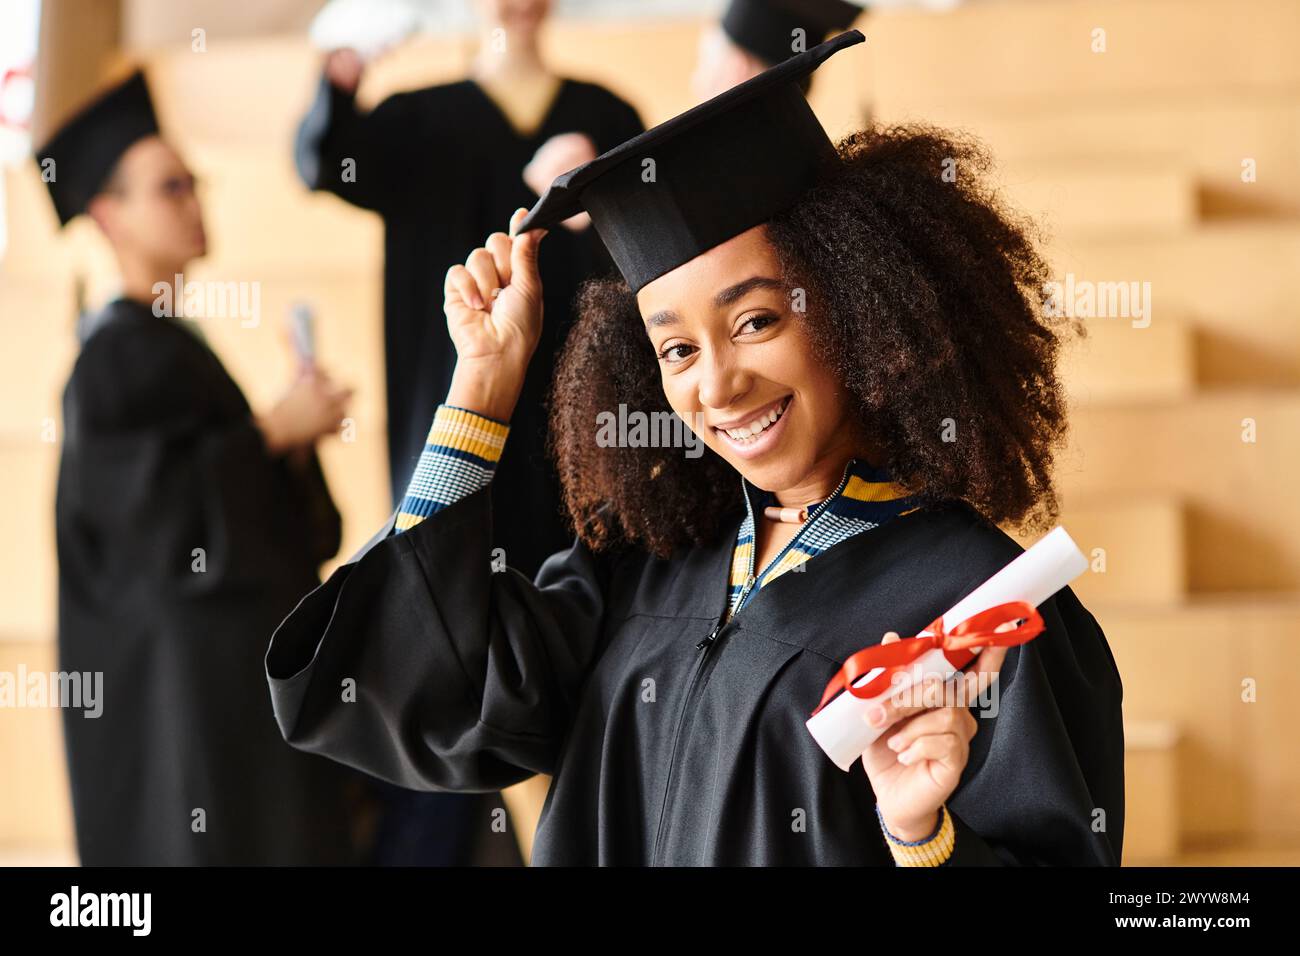 Eine vielfältige Gruppe von Absolventen feiert mit Freude in ihren Mützen und Kleidern bei einer Abschlussfeier an der Universität. Stockfoto